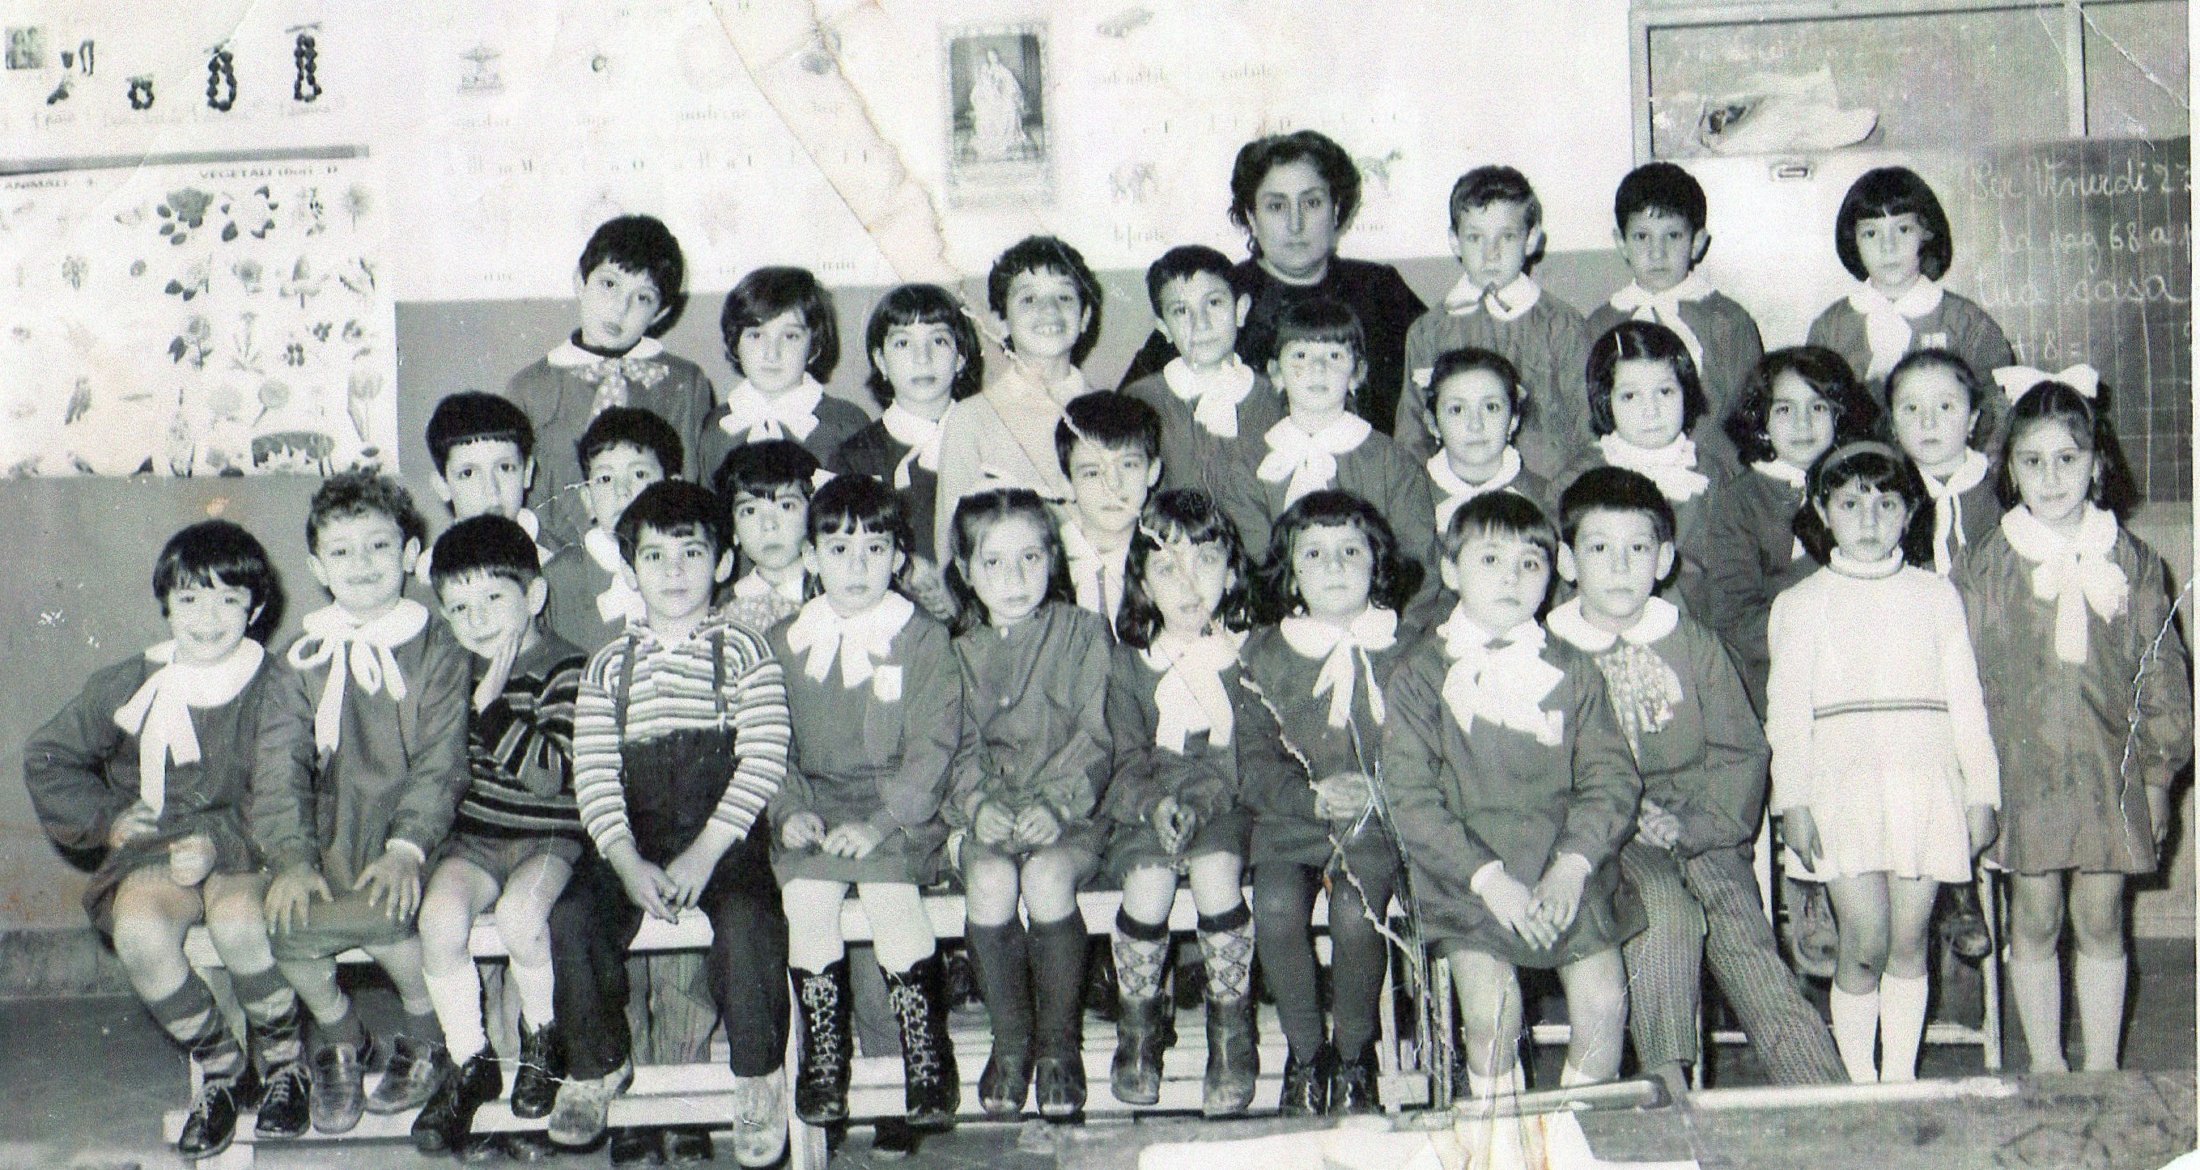 Maestra Adele Sparacino con la classe mista di prima elementare scuola San Leonardo 1970/1971 